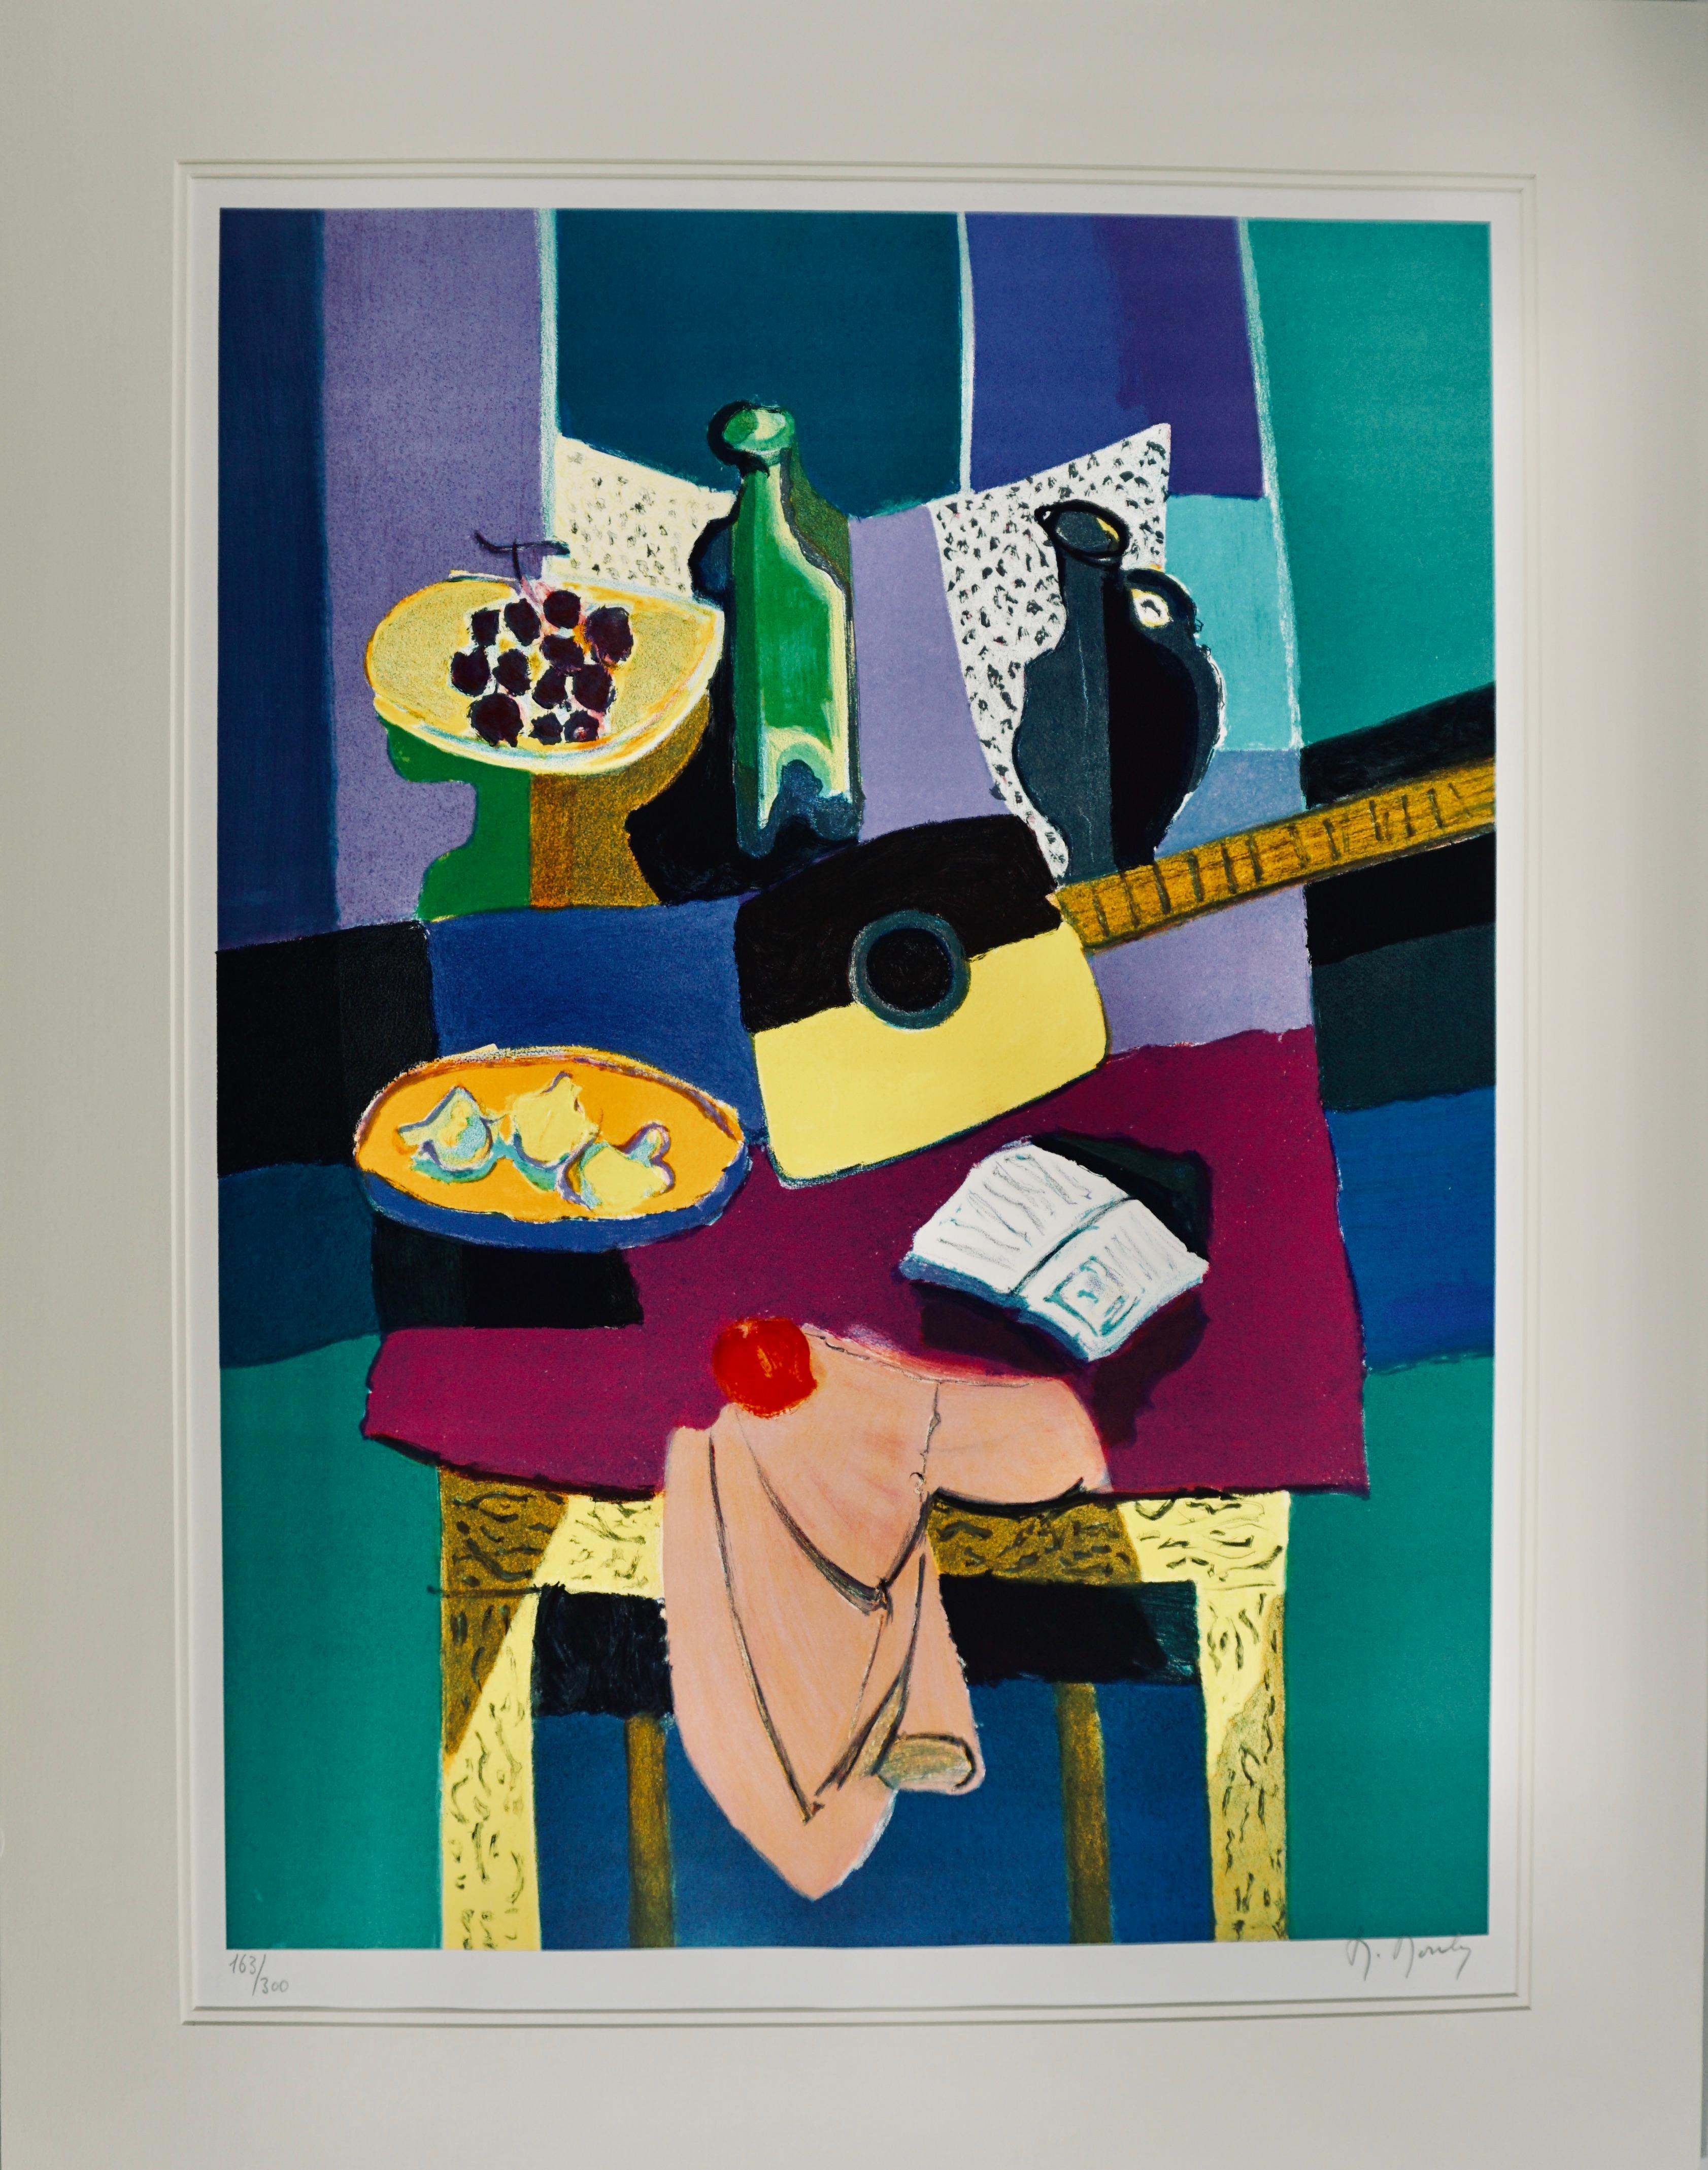 Innenraumszene mit Obst, Gitarre, Weinflasche auf Tisch (Abstrakter Expressionismus), Print, von Marcel Mouly